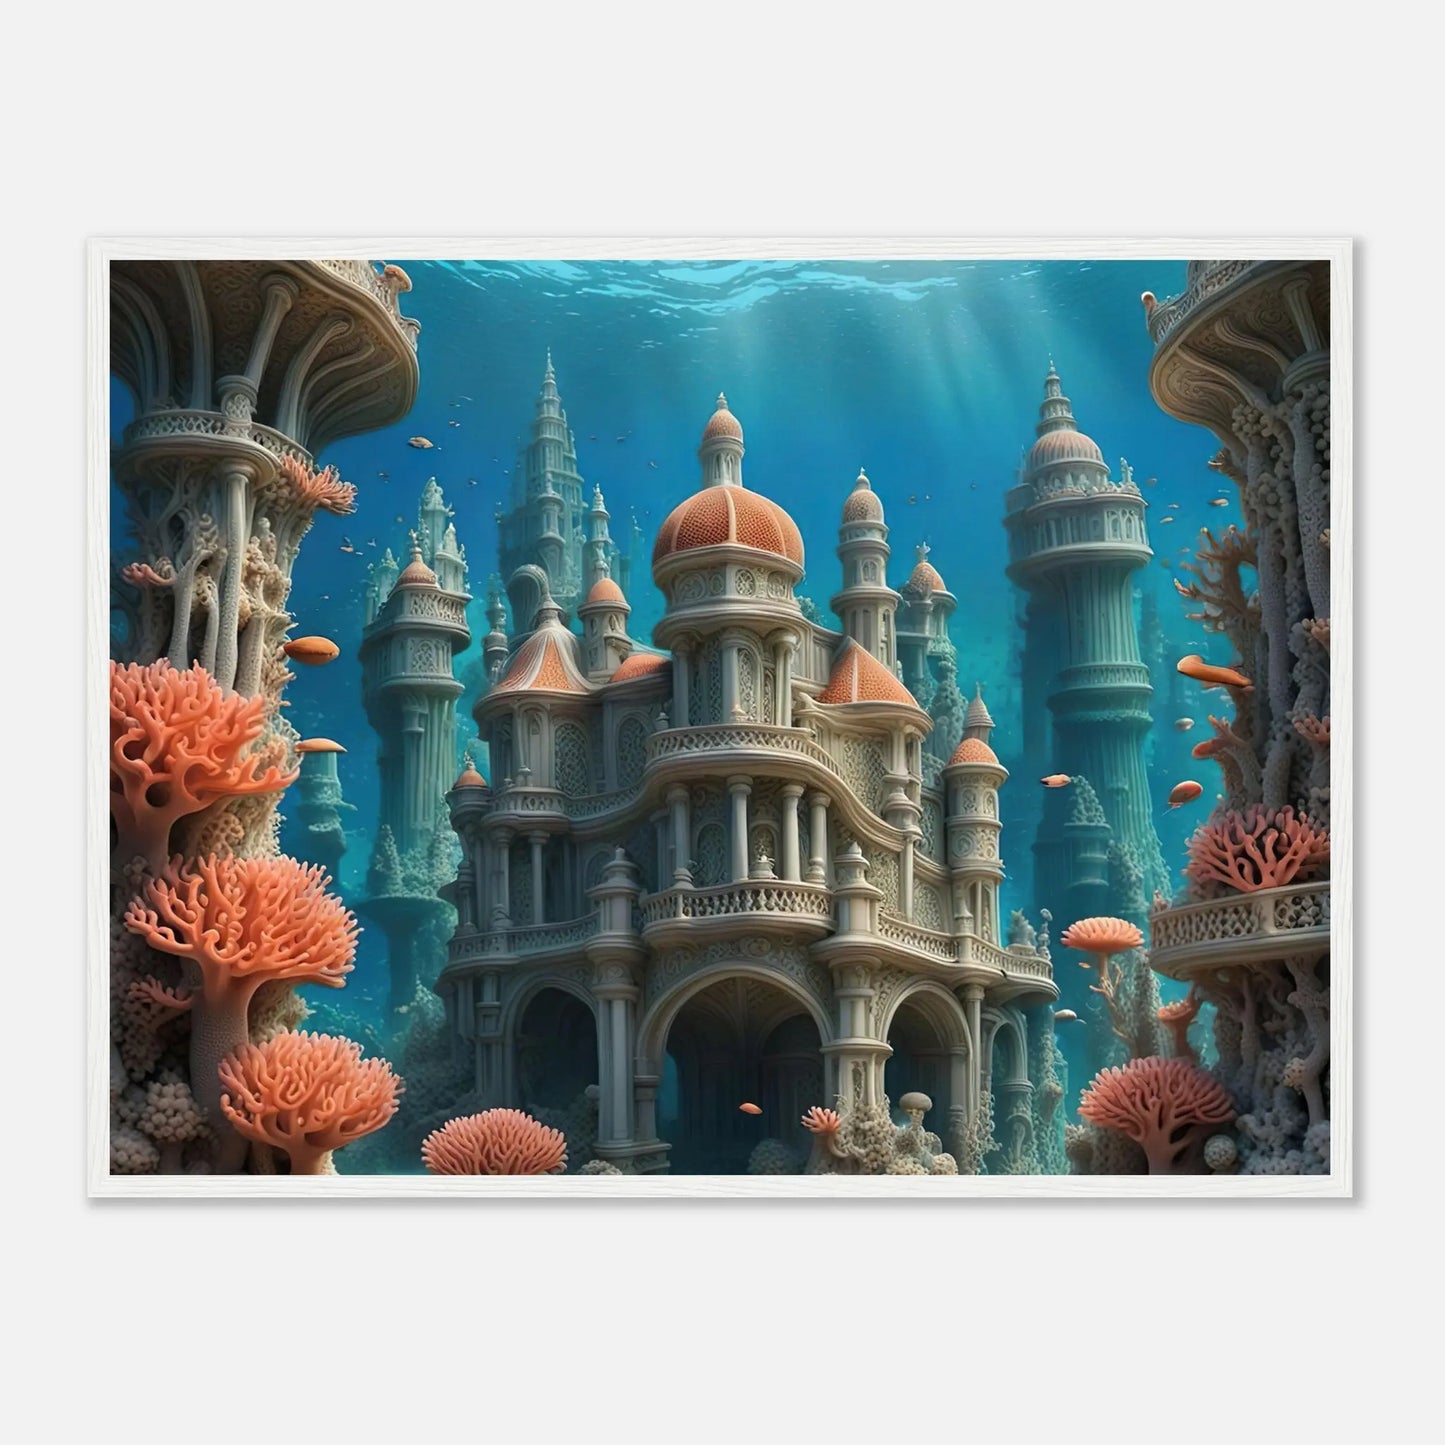 Gerahmtes Premium-Poster - Unterwasserwelt - Digitaler Stil, KI-Kunst - RolConArt, Unterwasserlandschaften, 60x80-cm-24x32-Weißer-Rahmen